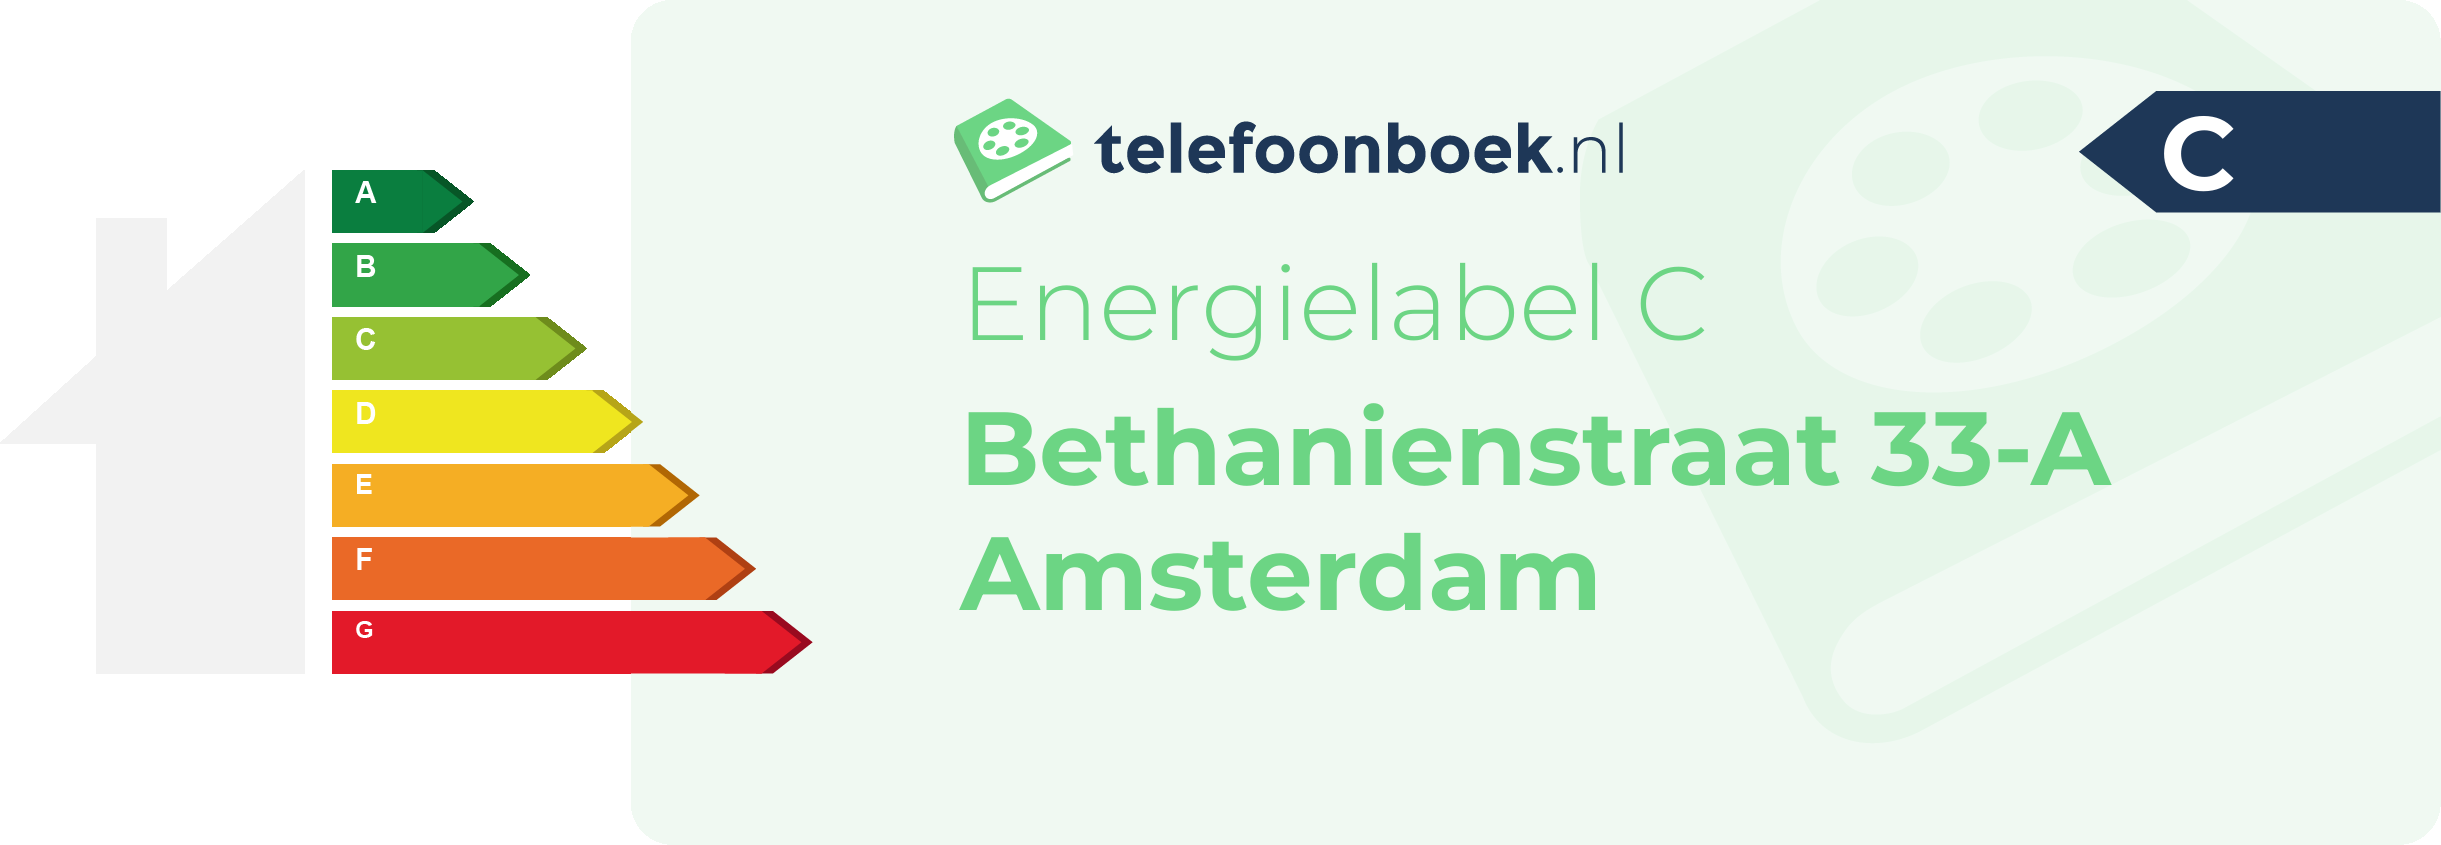 Energielabel Bethanienstraat 33-A Amsterdam